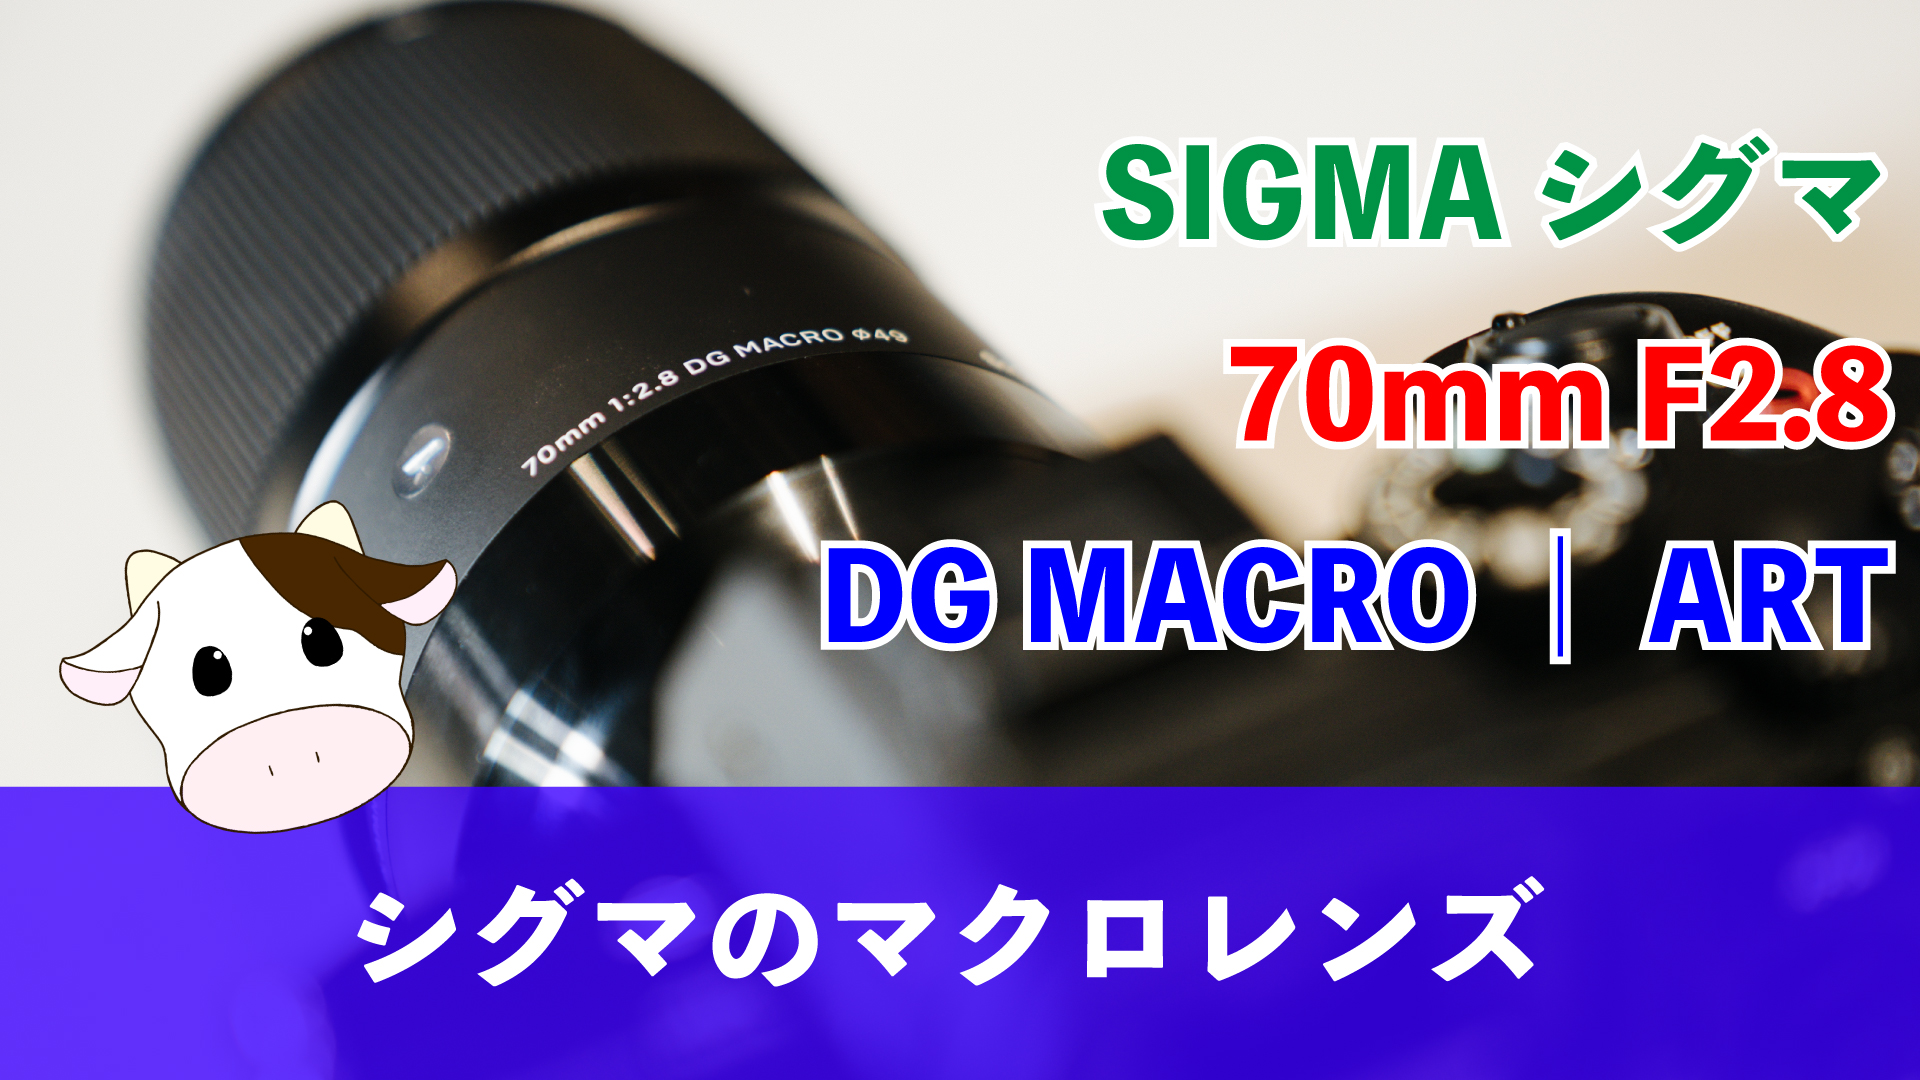 送料無料新品 ナシモトネットショップSIGMA 70mm F2.8 DG MACRO Canon